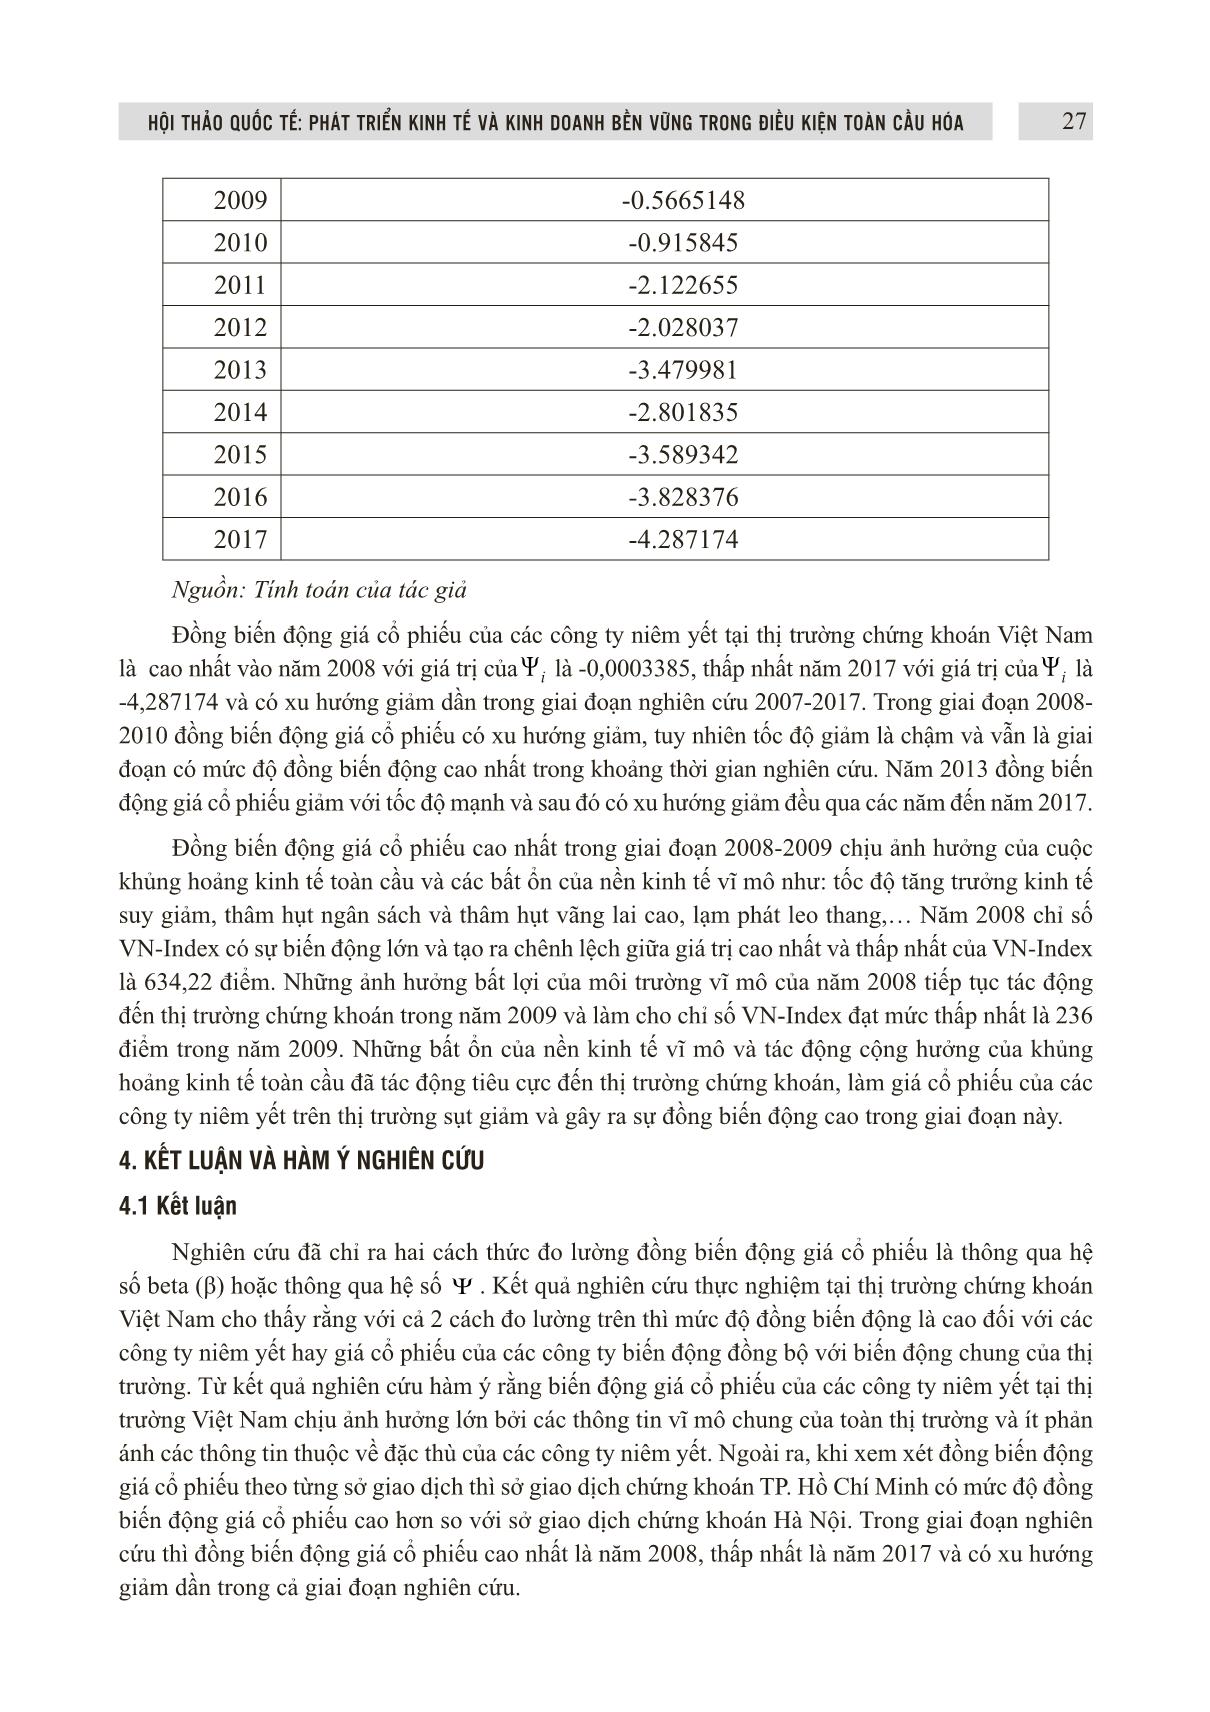 Đồng biến động giá cổ phiếu của các công ty niêm yết trên thị trường chứng khoán Việt Nam trang 9